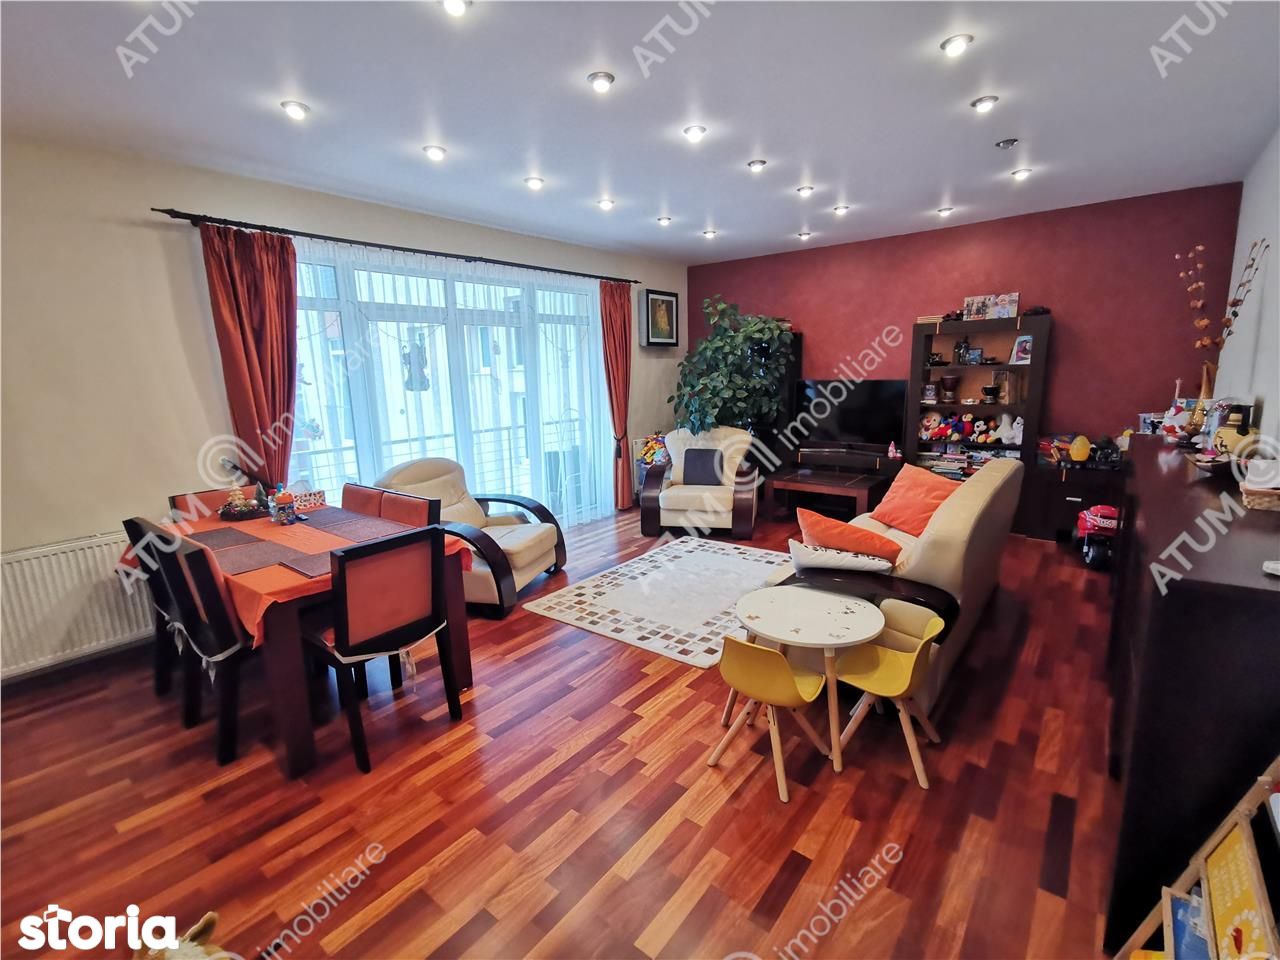 Apartament modern cu 3 camere de vanzare in zona Strand din Sibiu